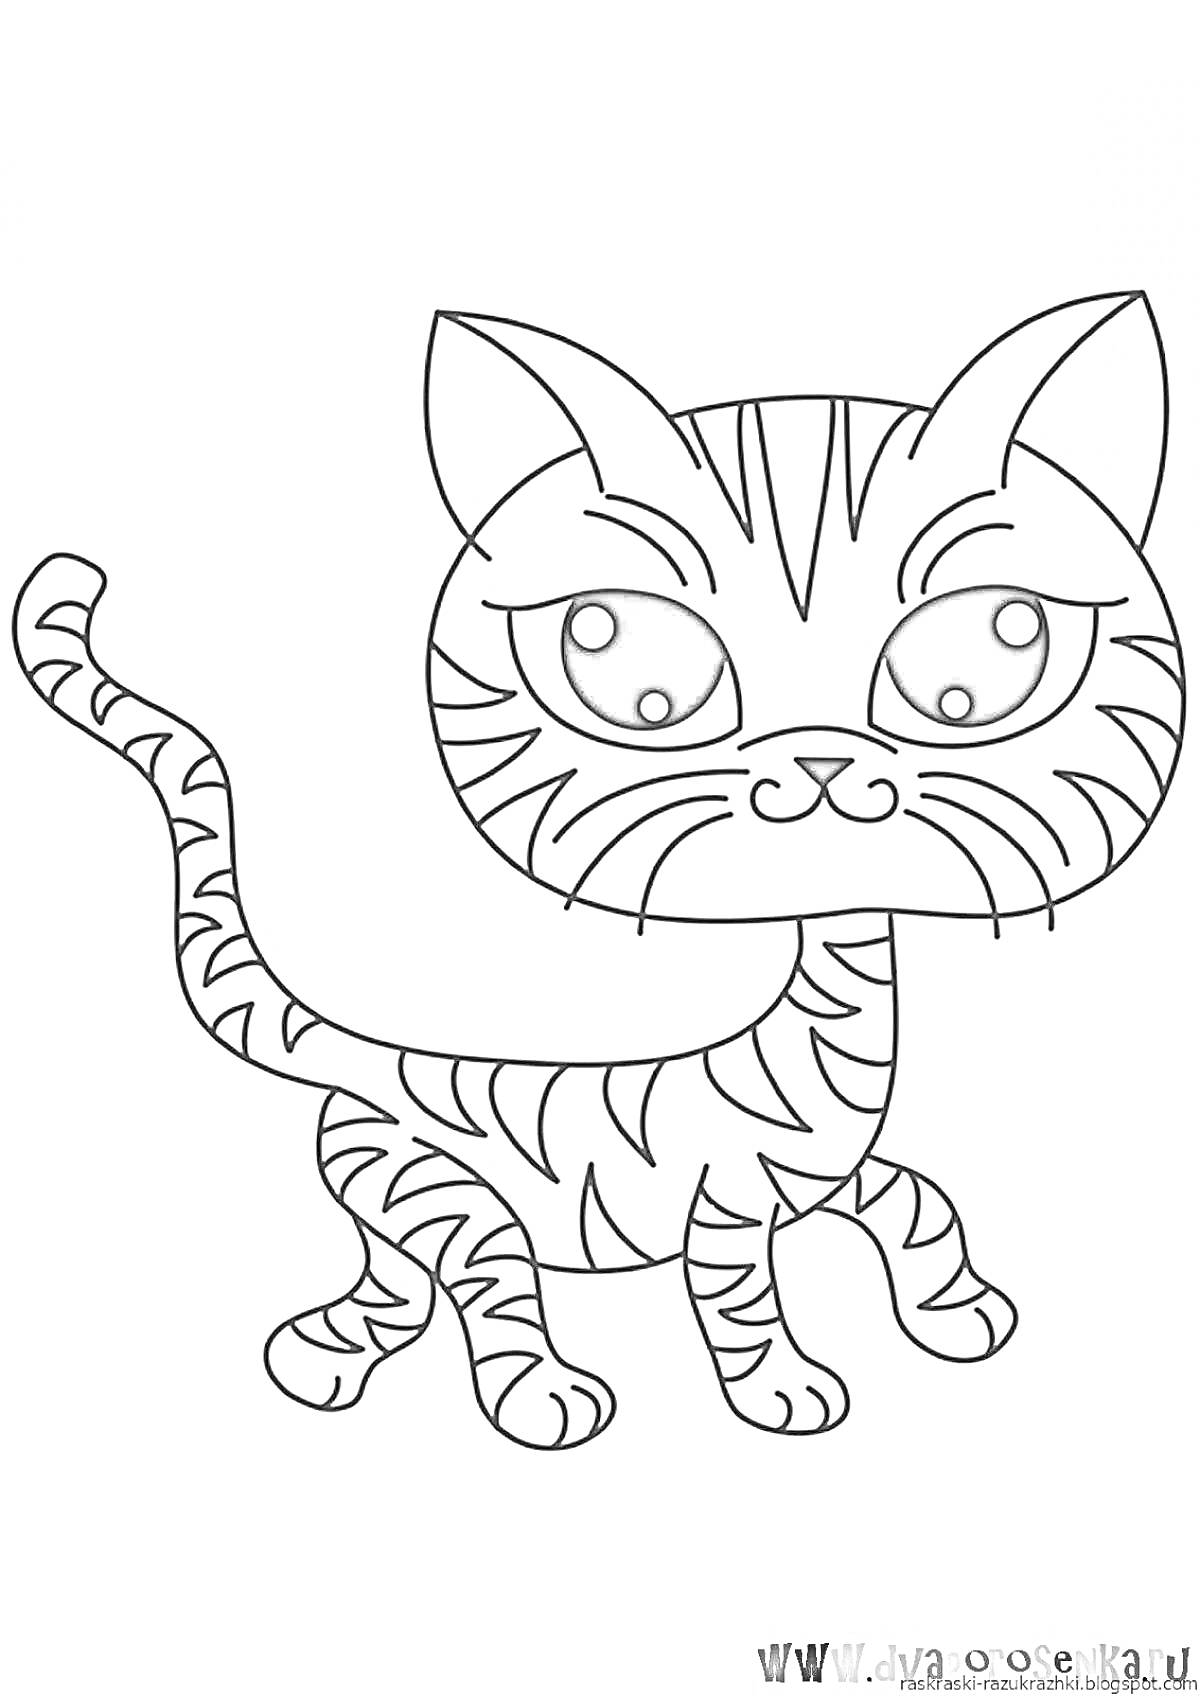 Раскраска Раскраска с изображением стоящего полосатого кота с большими глазами